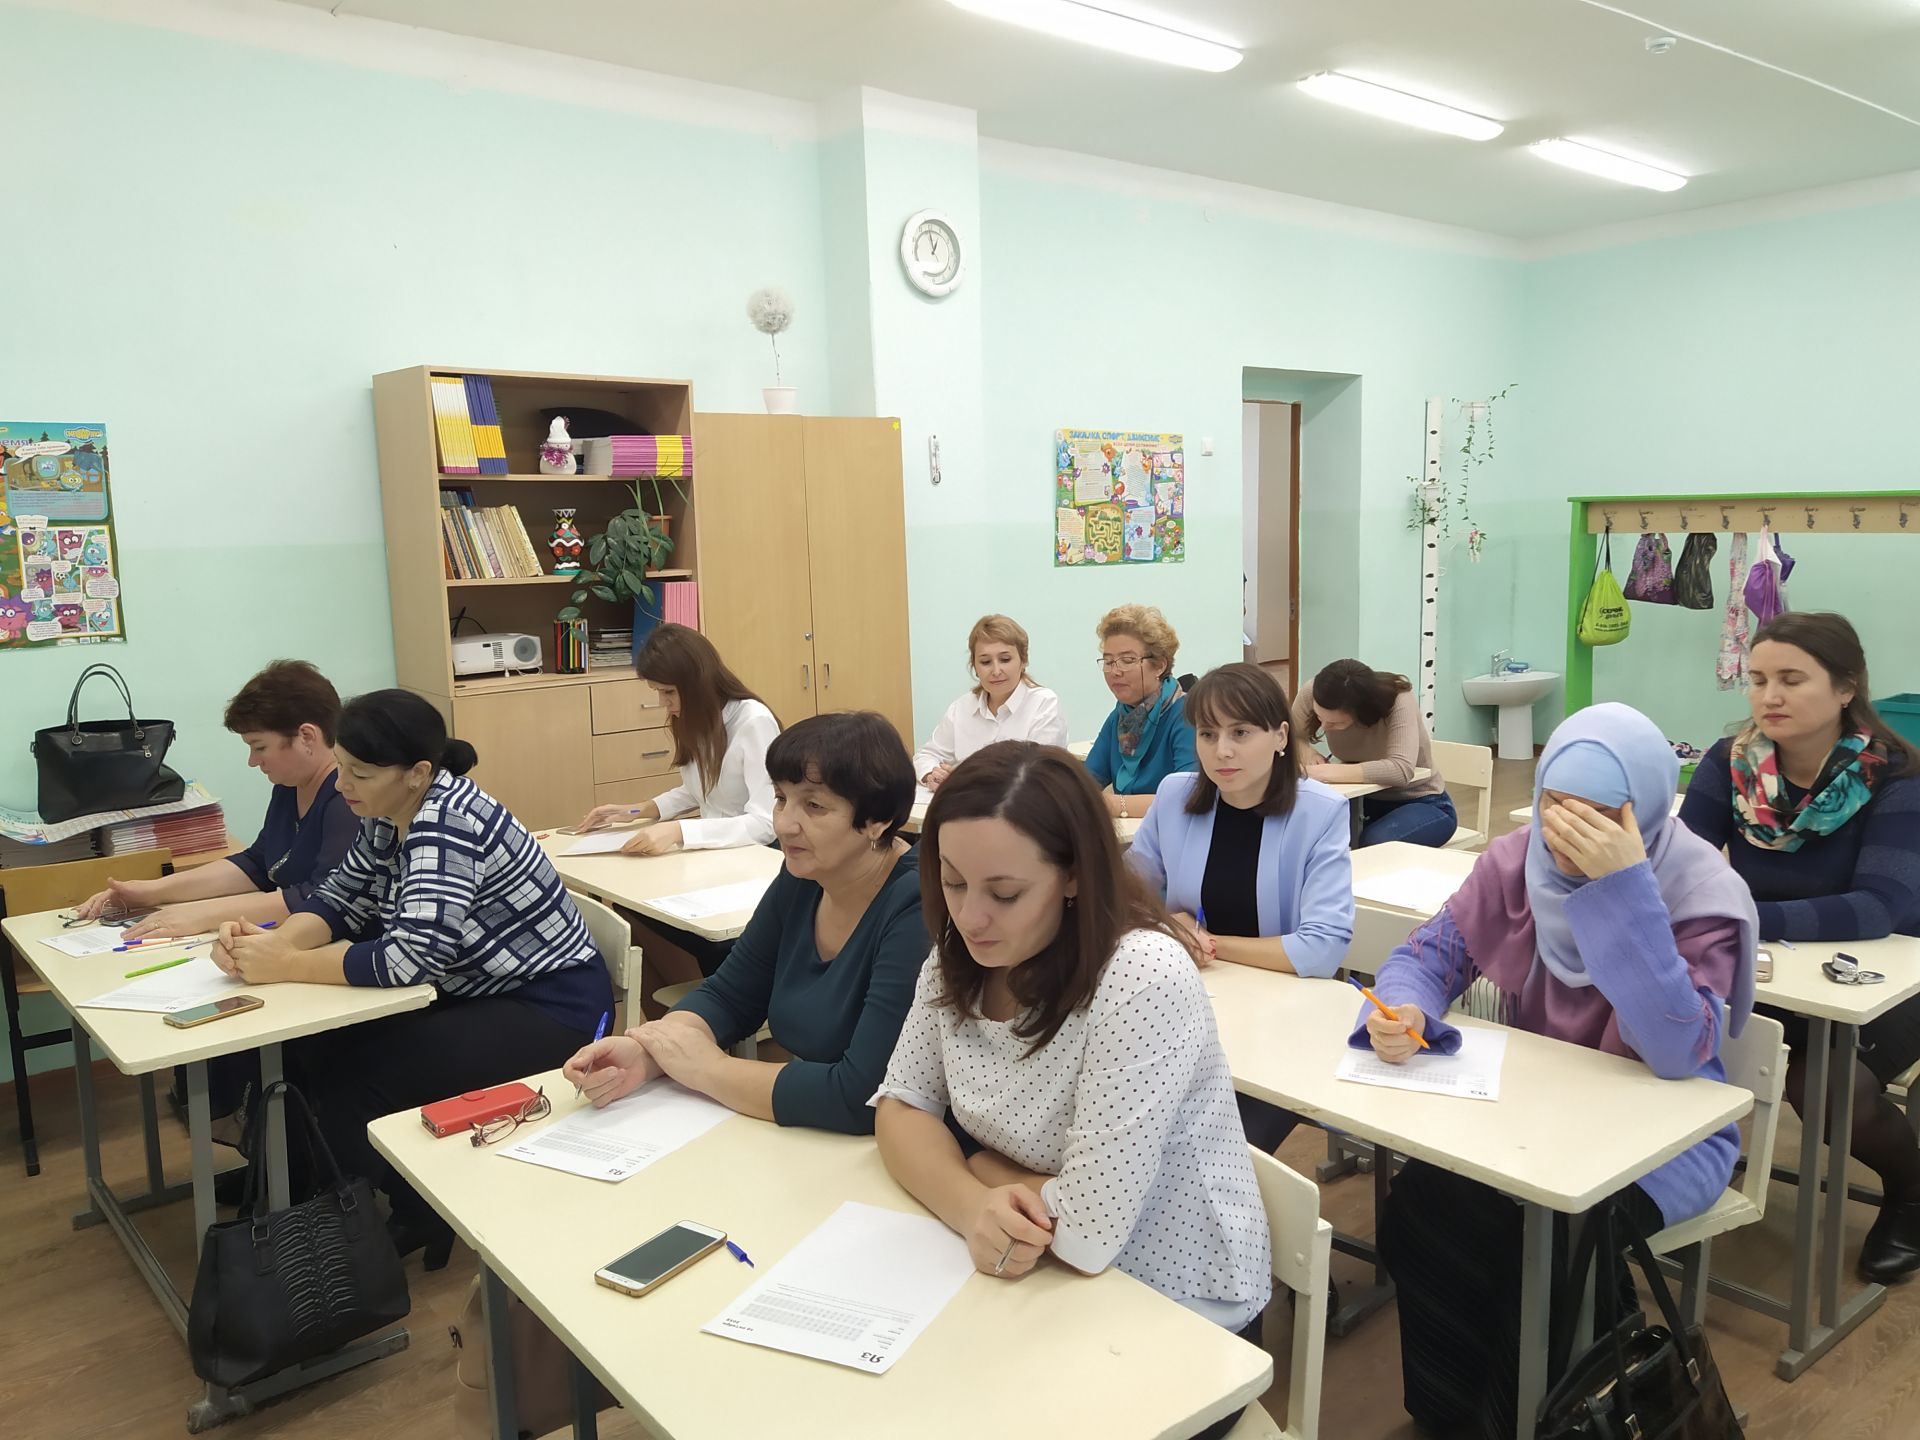 Сегодня проходила образовательная акция “Татарча диктант”